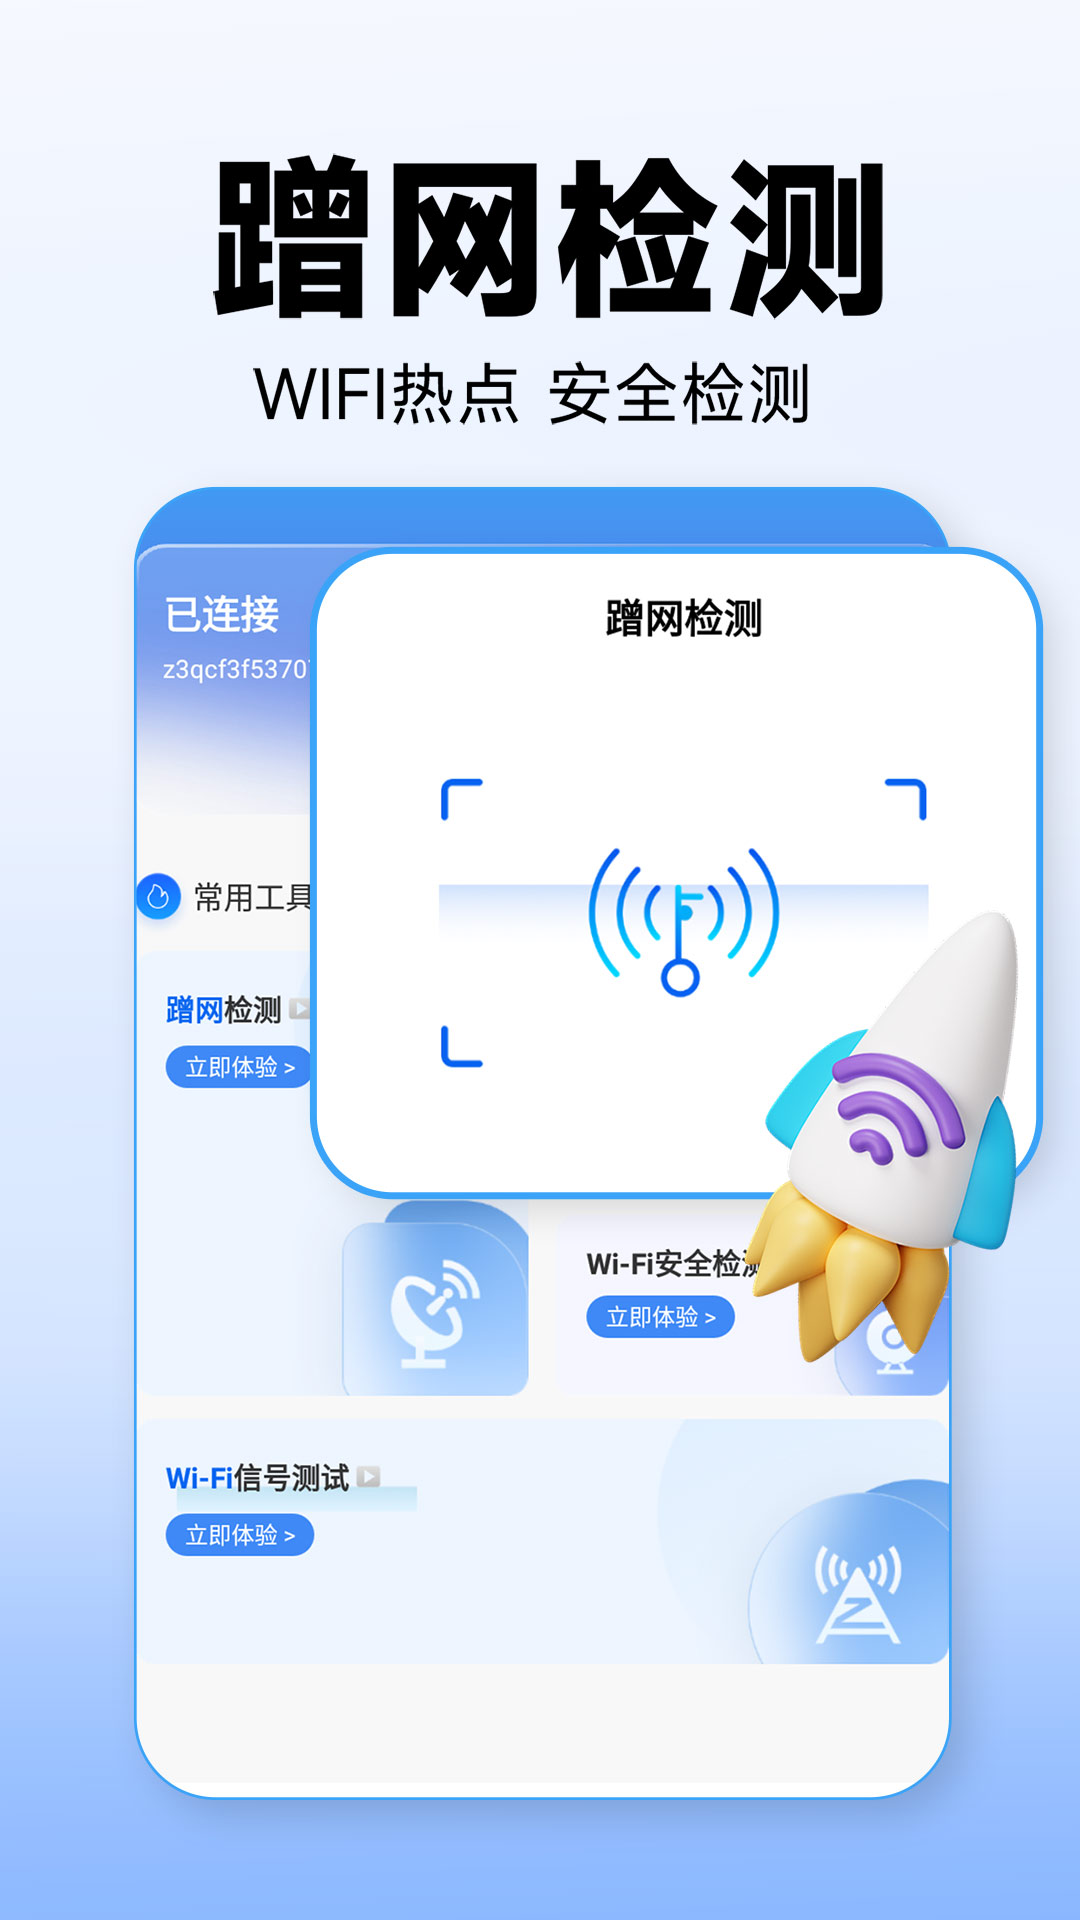 WiFi万能上网宝图3